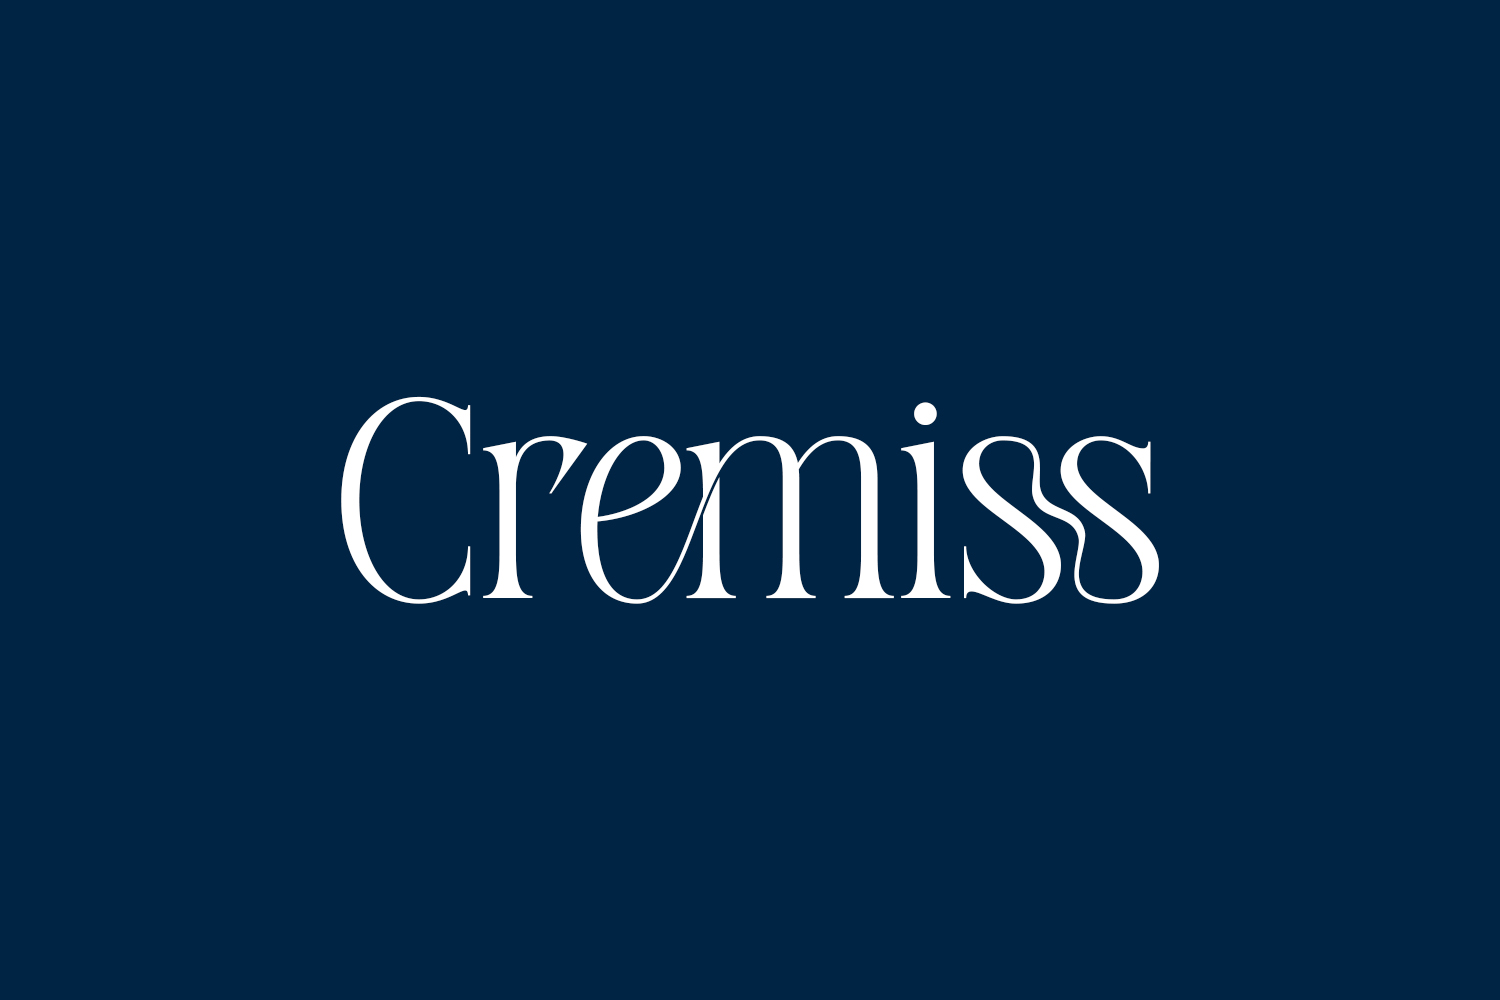 Cremiss Free Font